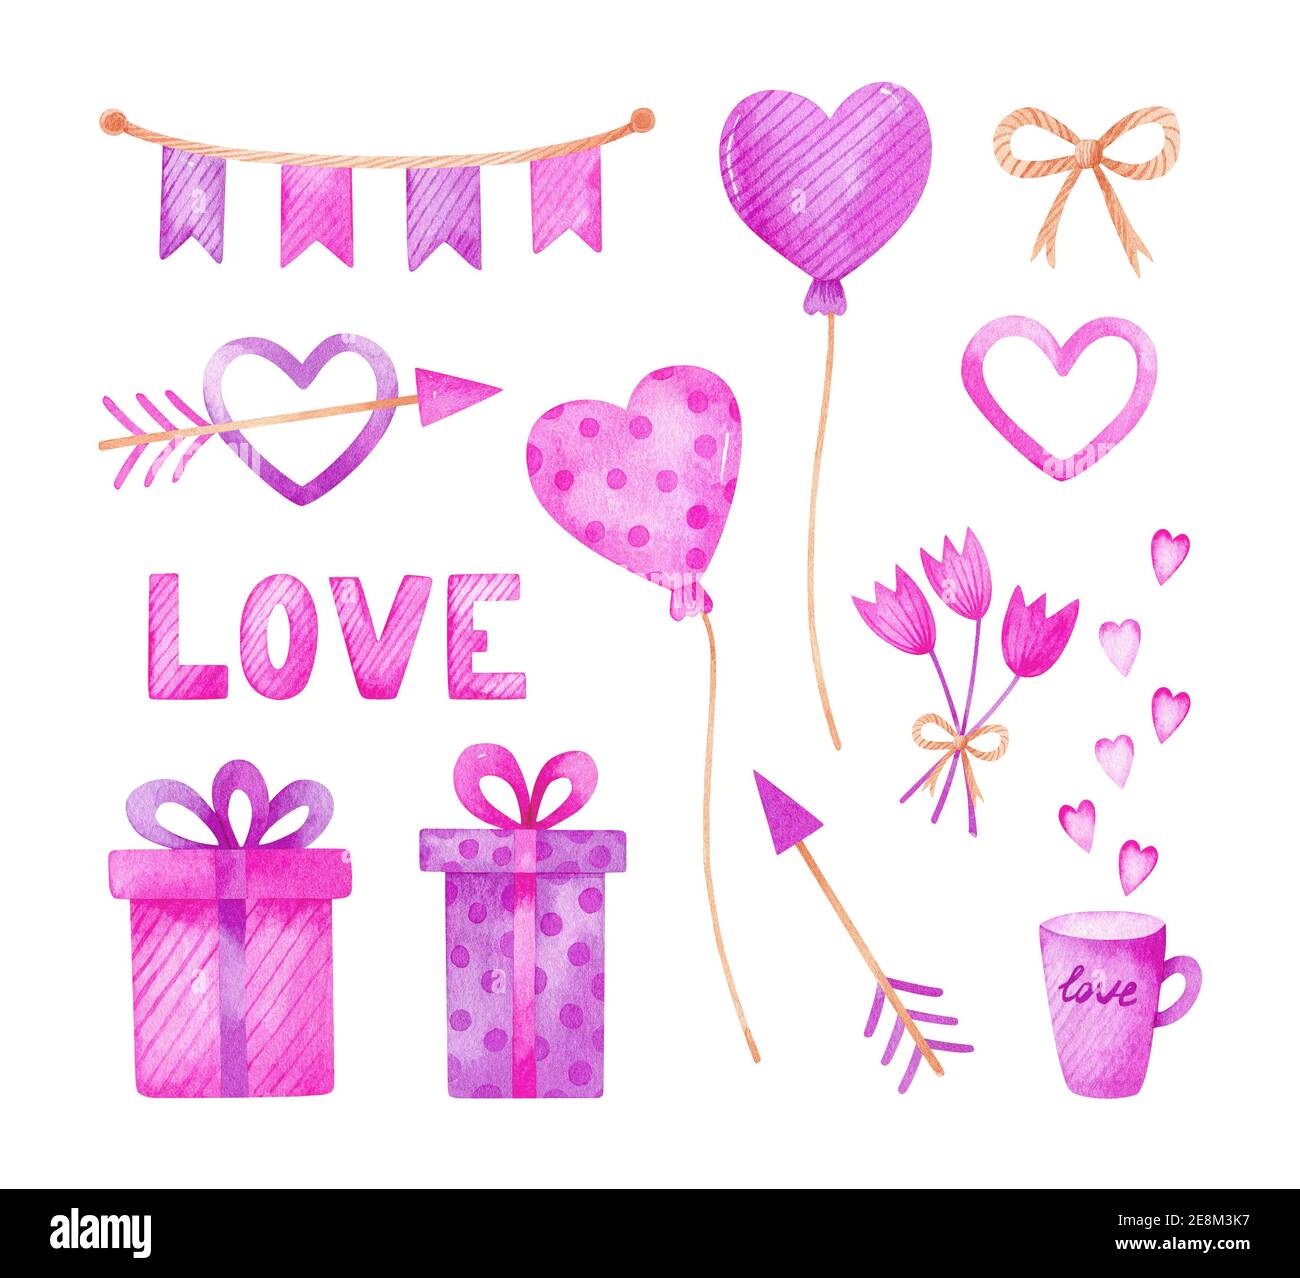 Insieme di acquerelli di San Valentino con palloncini rosa e viola, regali, ghirlanda, fiori, frecce e cuori. Design romantico e festivo. Foto Stock